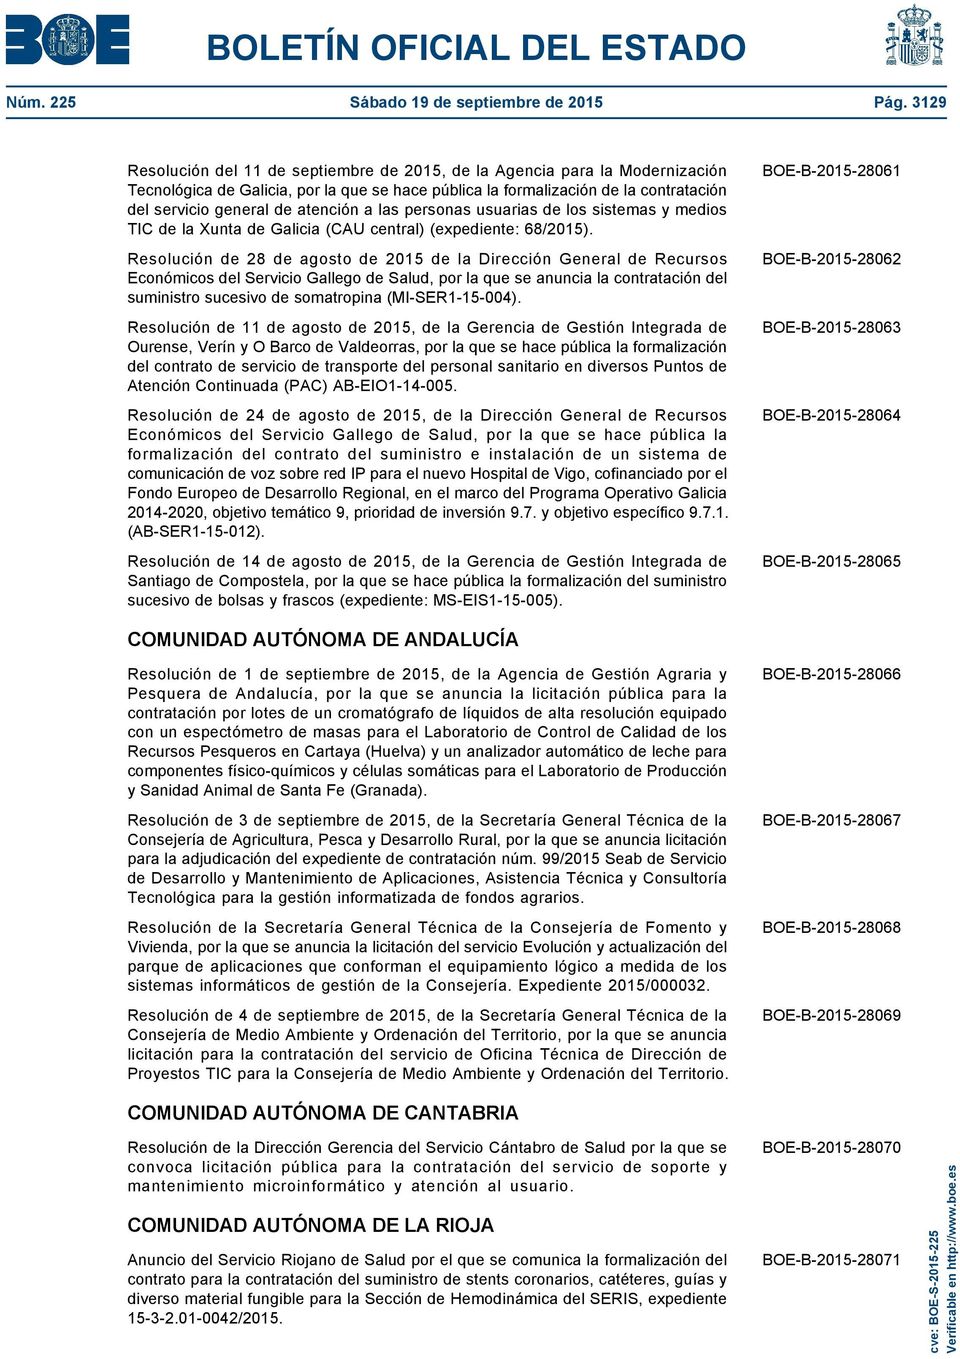 atención a las personas usuarias de los sistemas y medios TIC de la Xunta de Galicia (CAU central) (expediente: 68/2015).